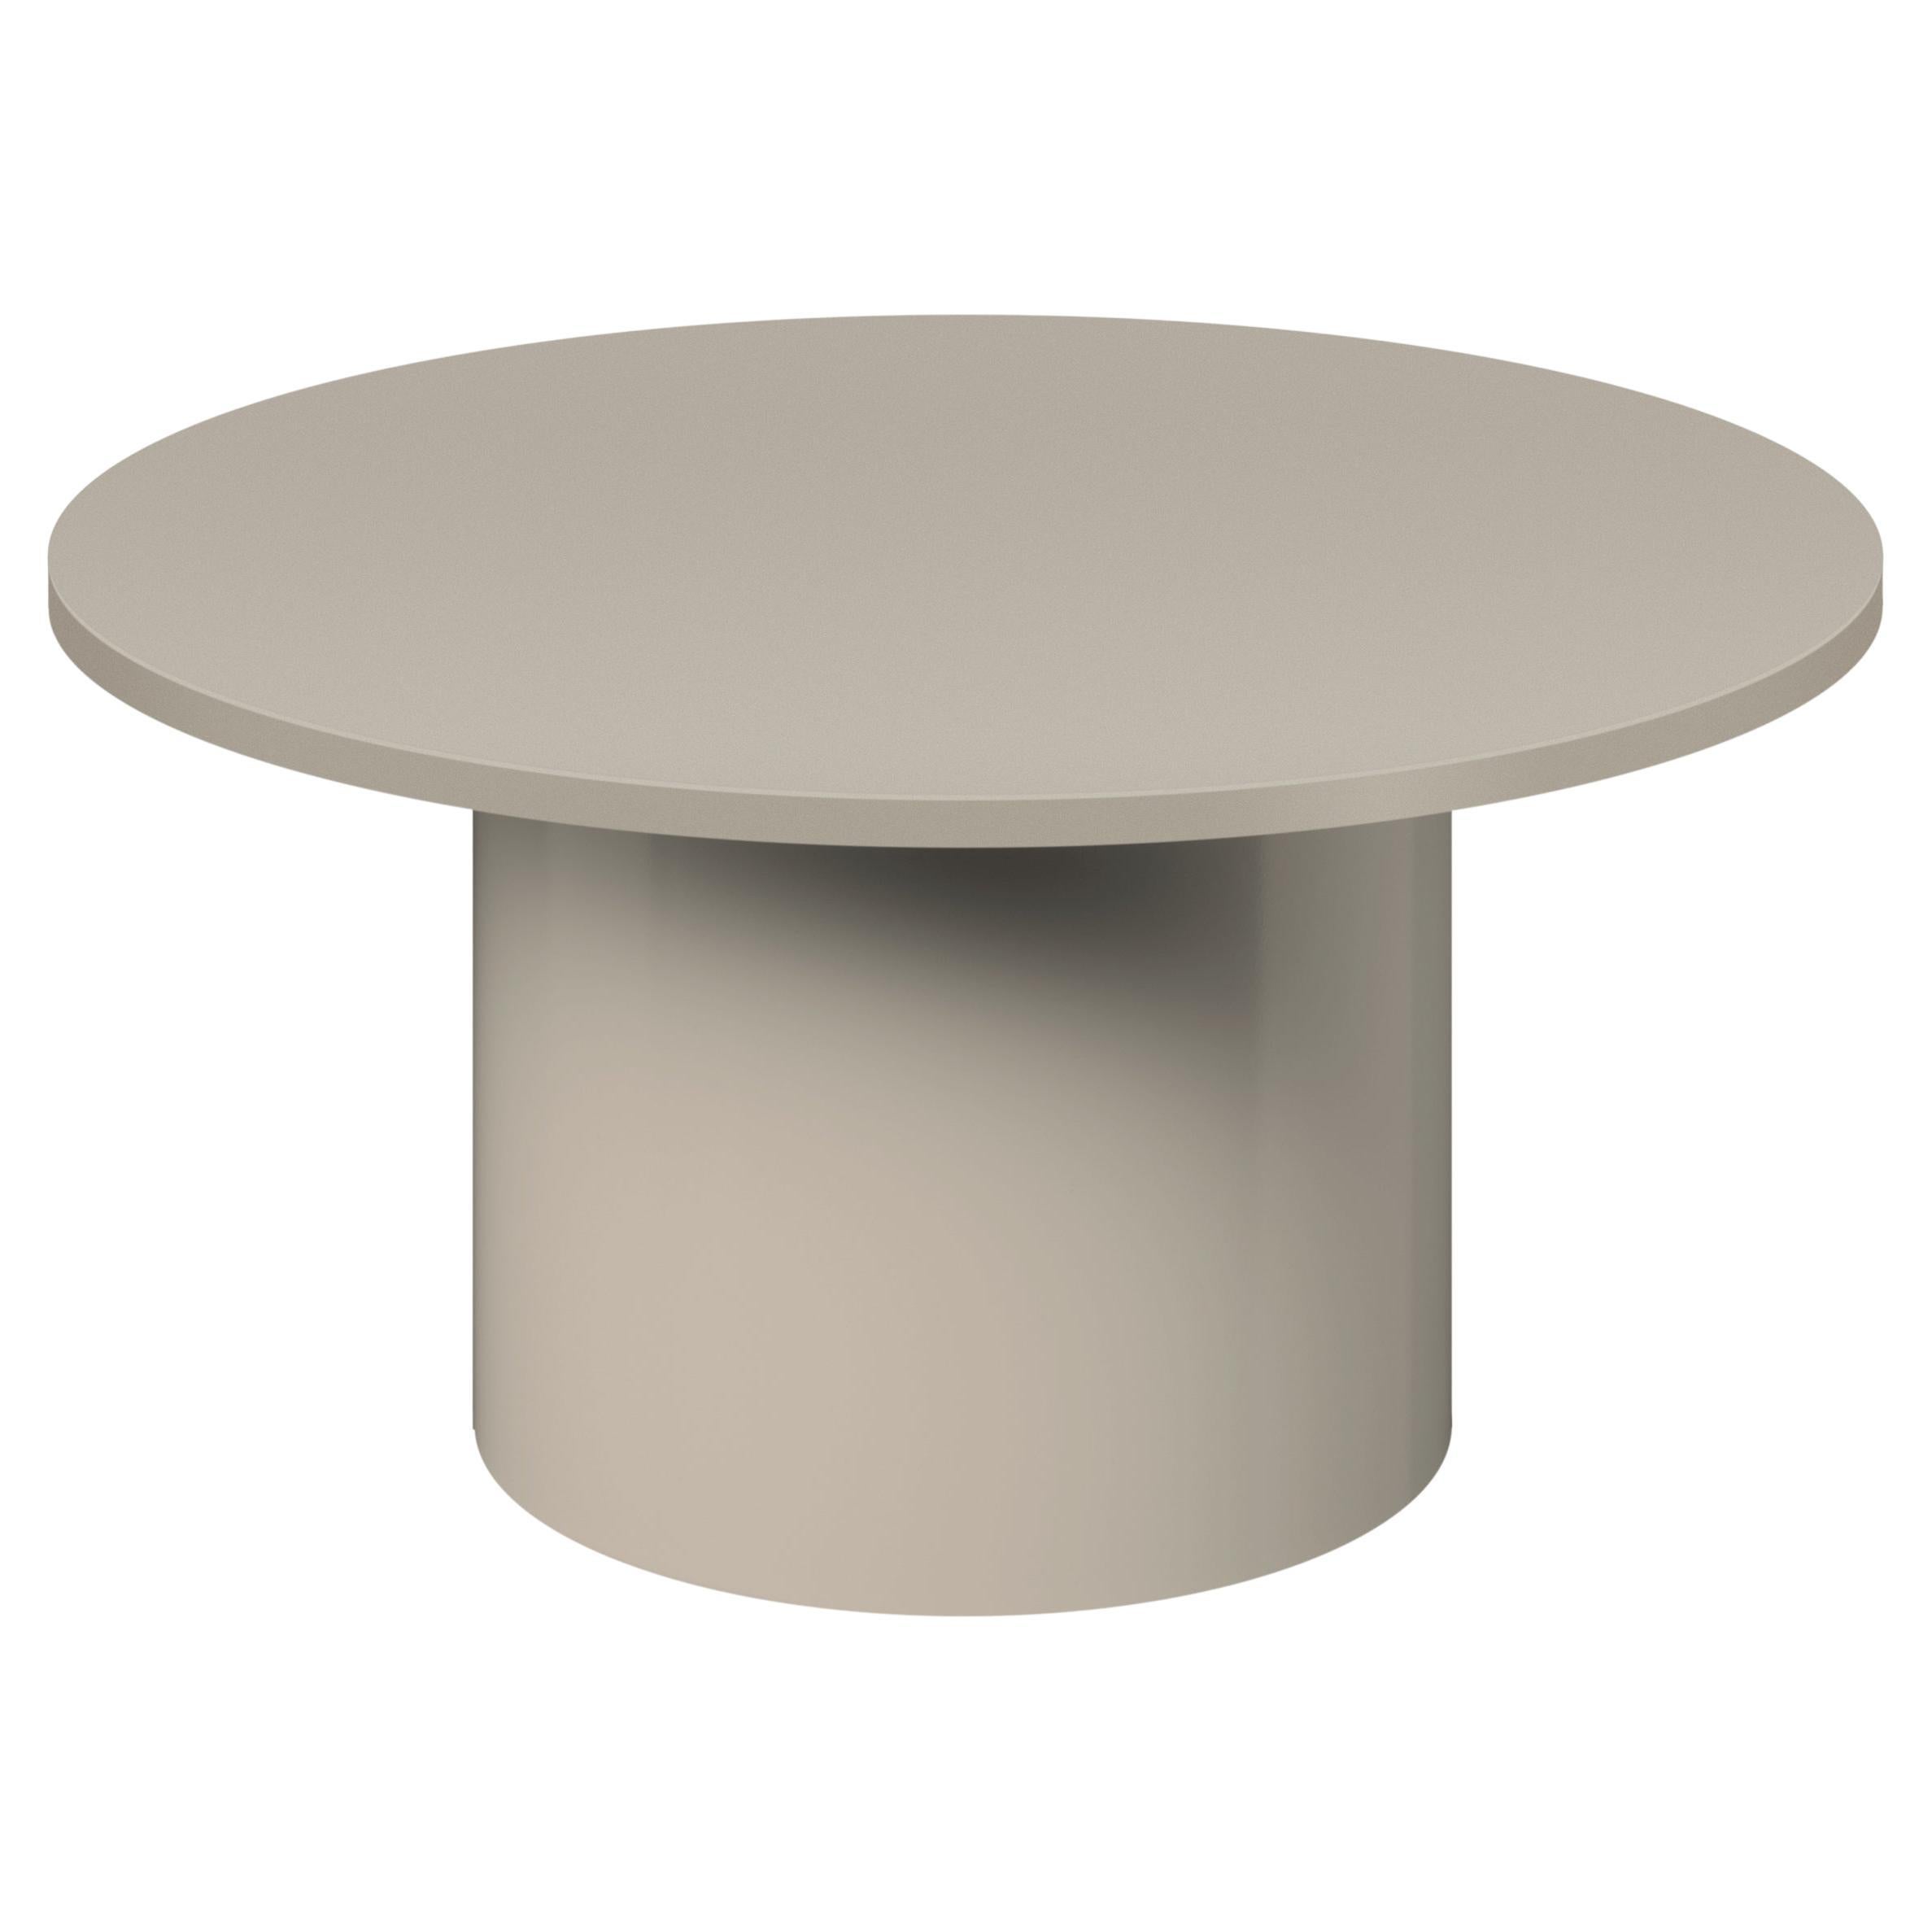 la table d'appoint iconique ENOKI de Philipp Mainzer est présentée en métal, ce qui met en valeur sa forme essentielle et minimale. Fabriquée en acier, recouverte d'un revêtement en poudre dans les couleurs gris soie, orange pur et noir de jais ou